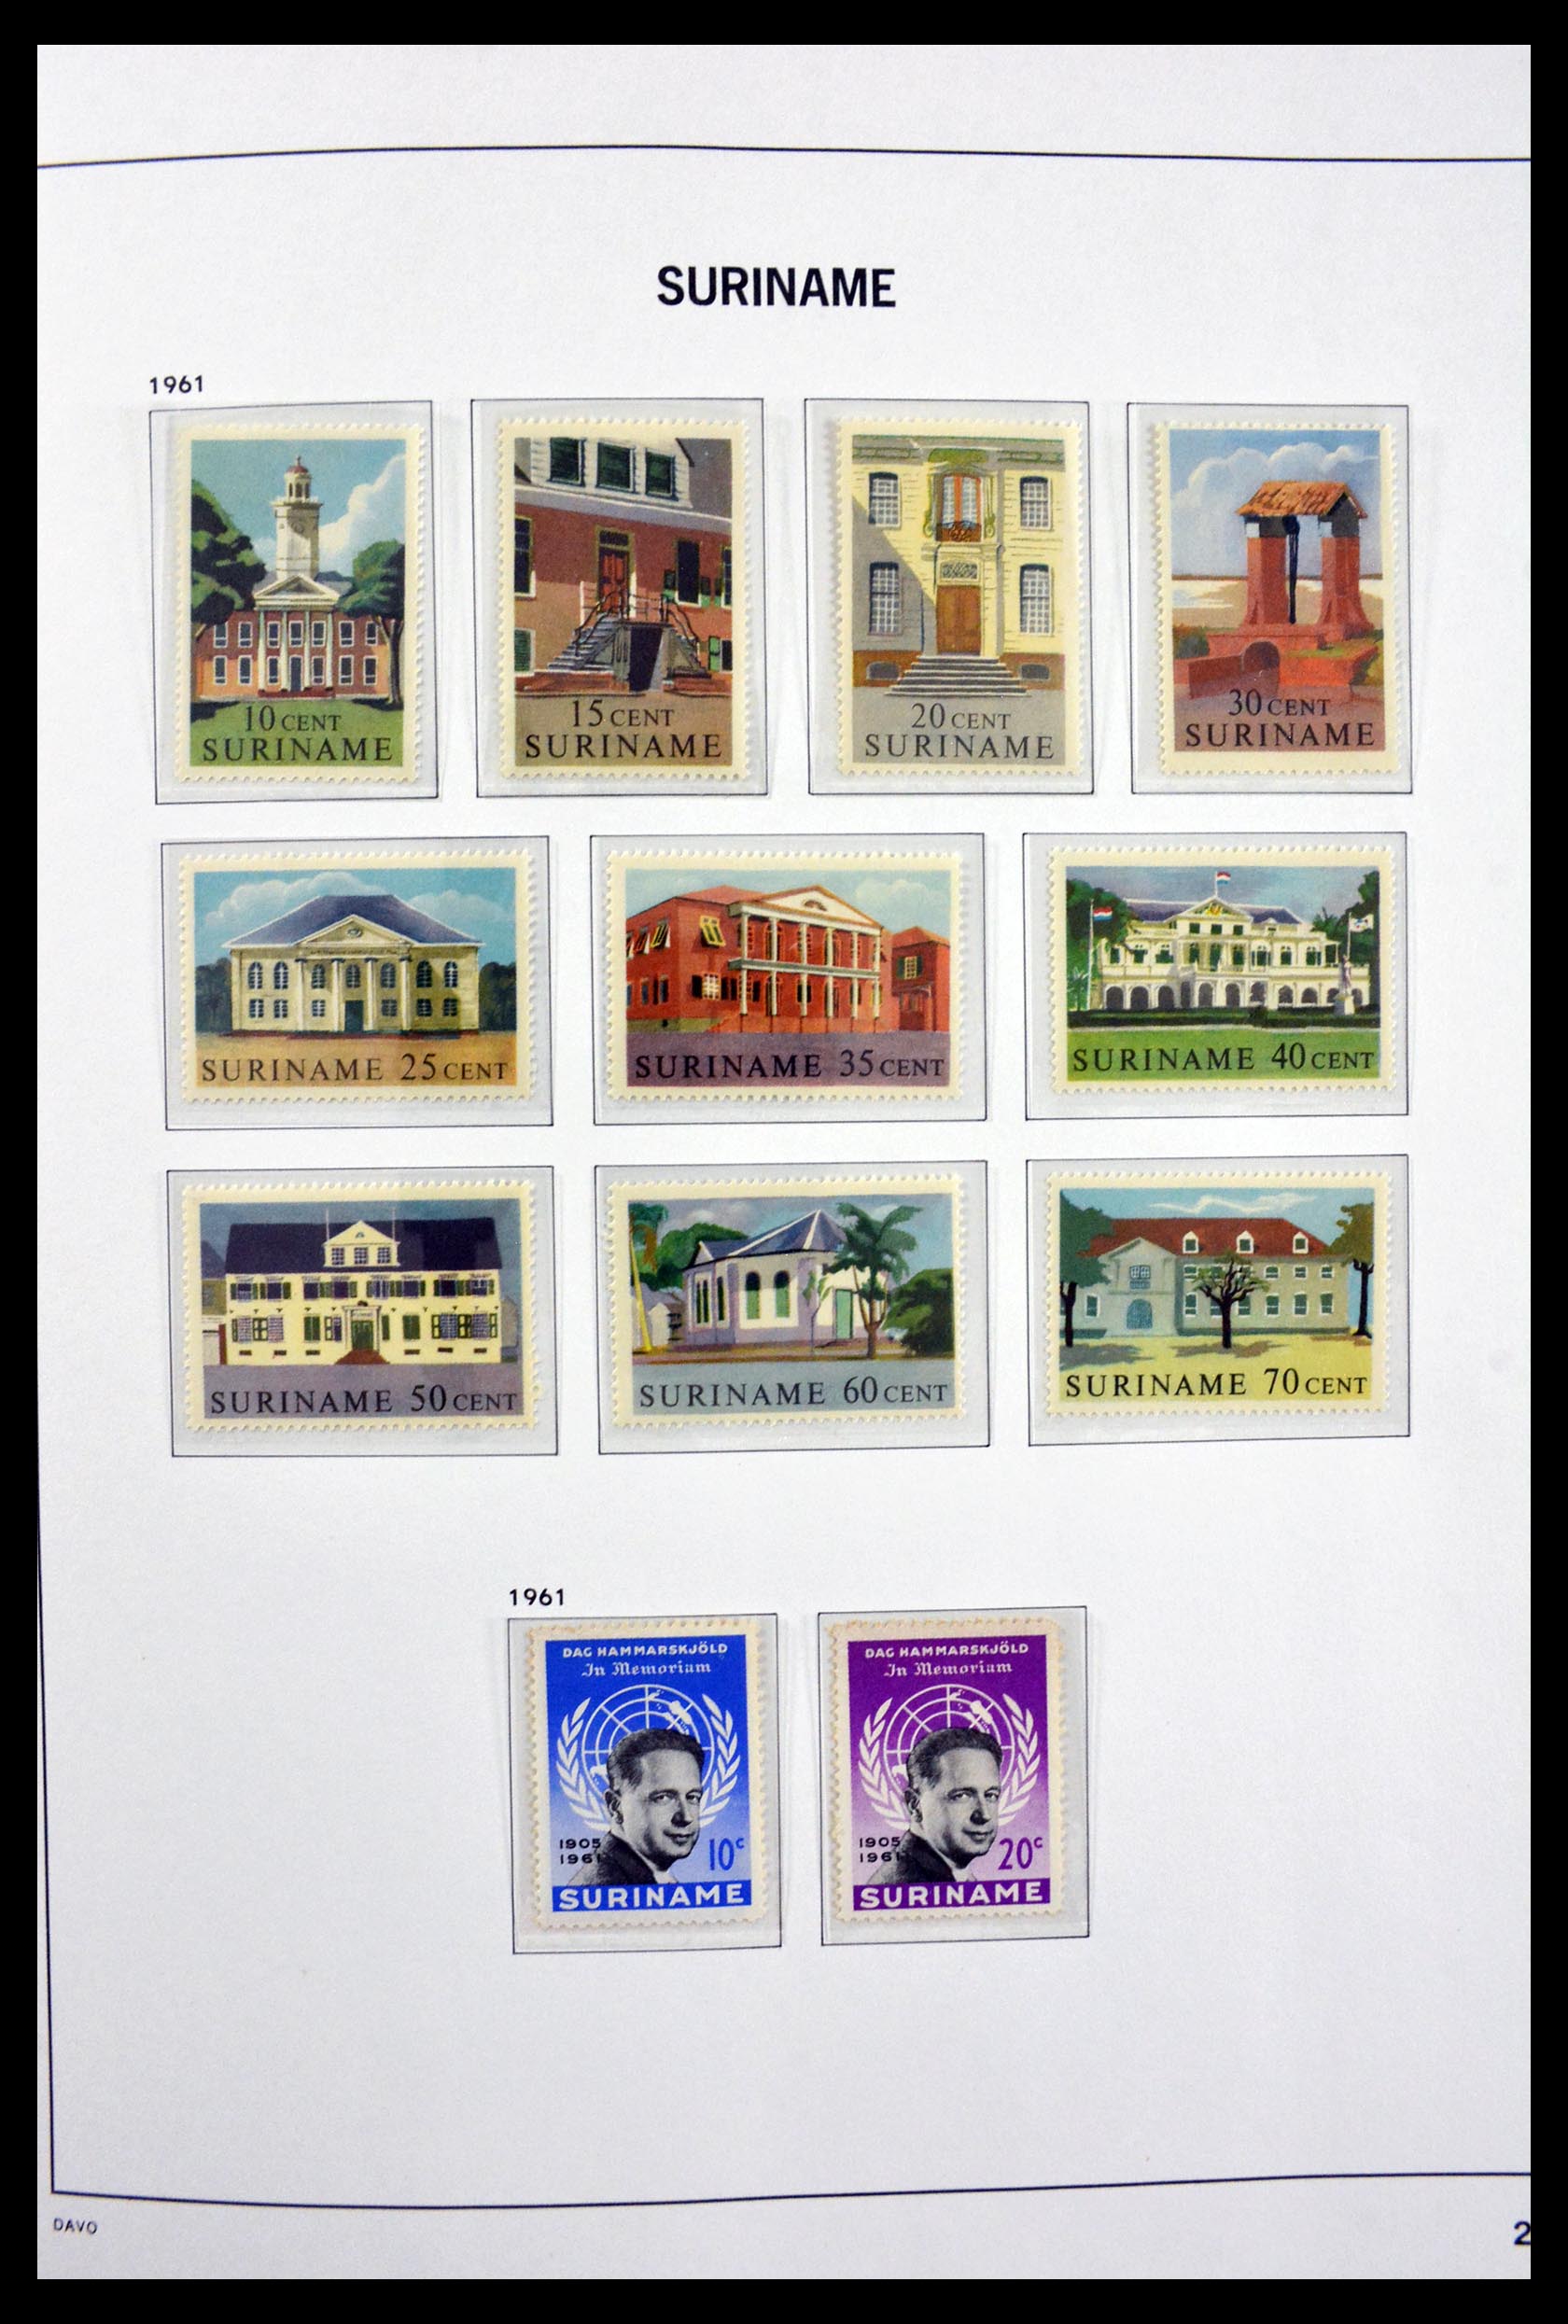 29801 022 - 29801 Surinam 1873-1975.